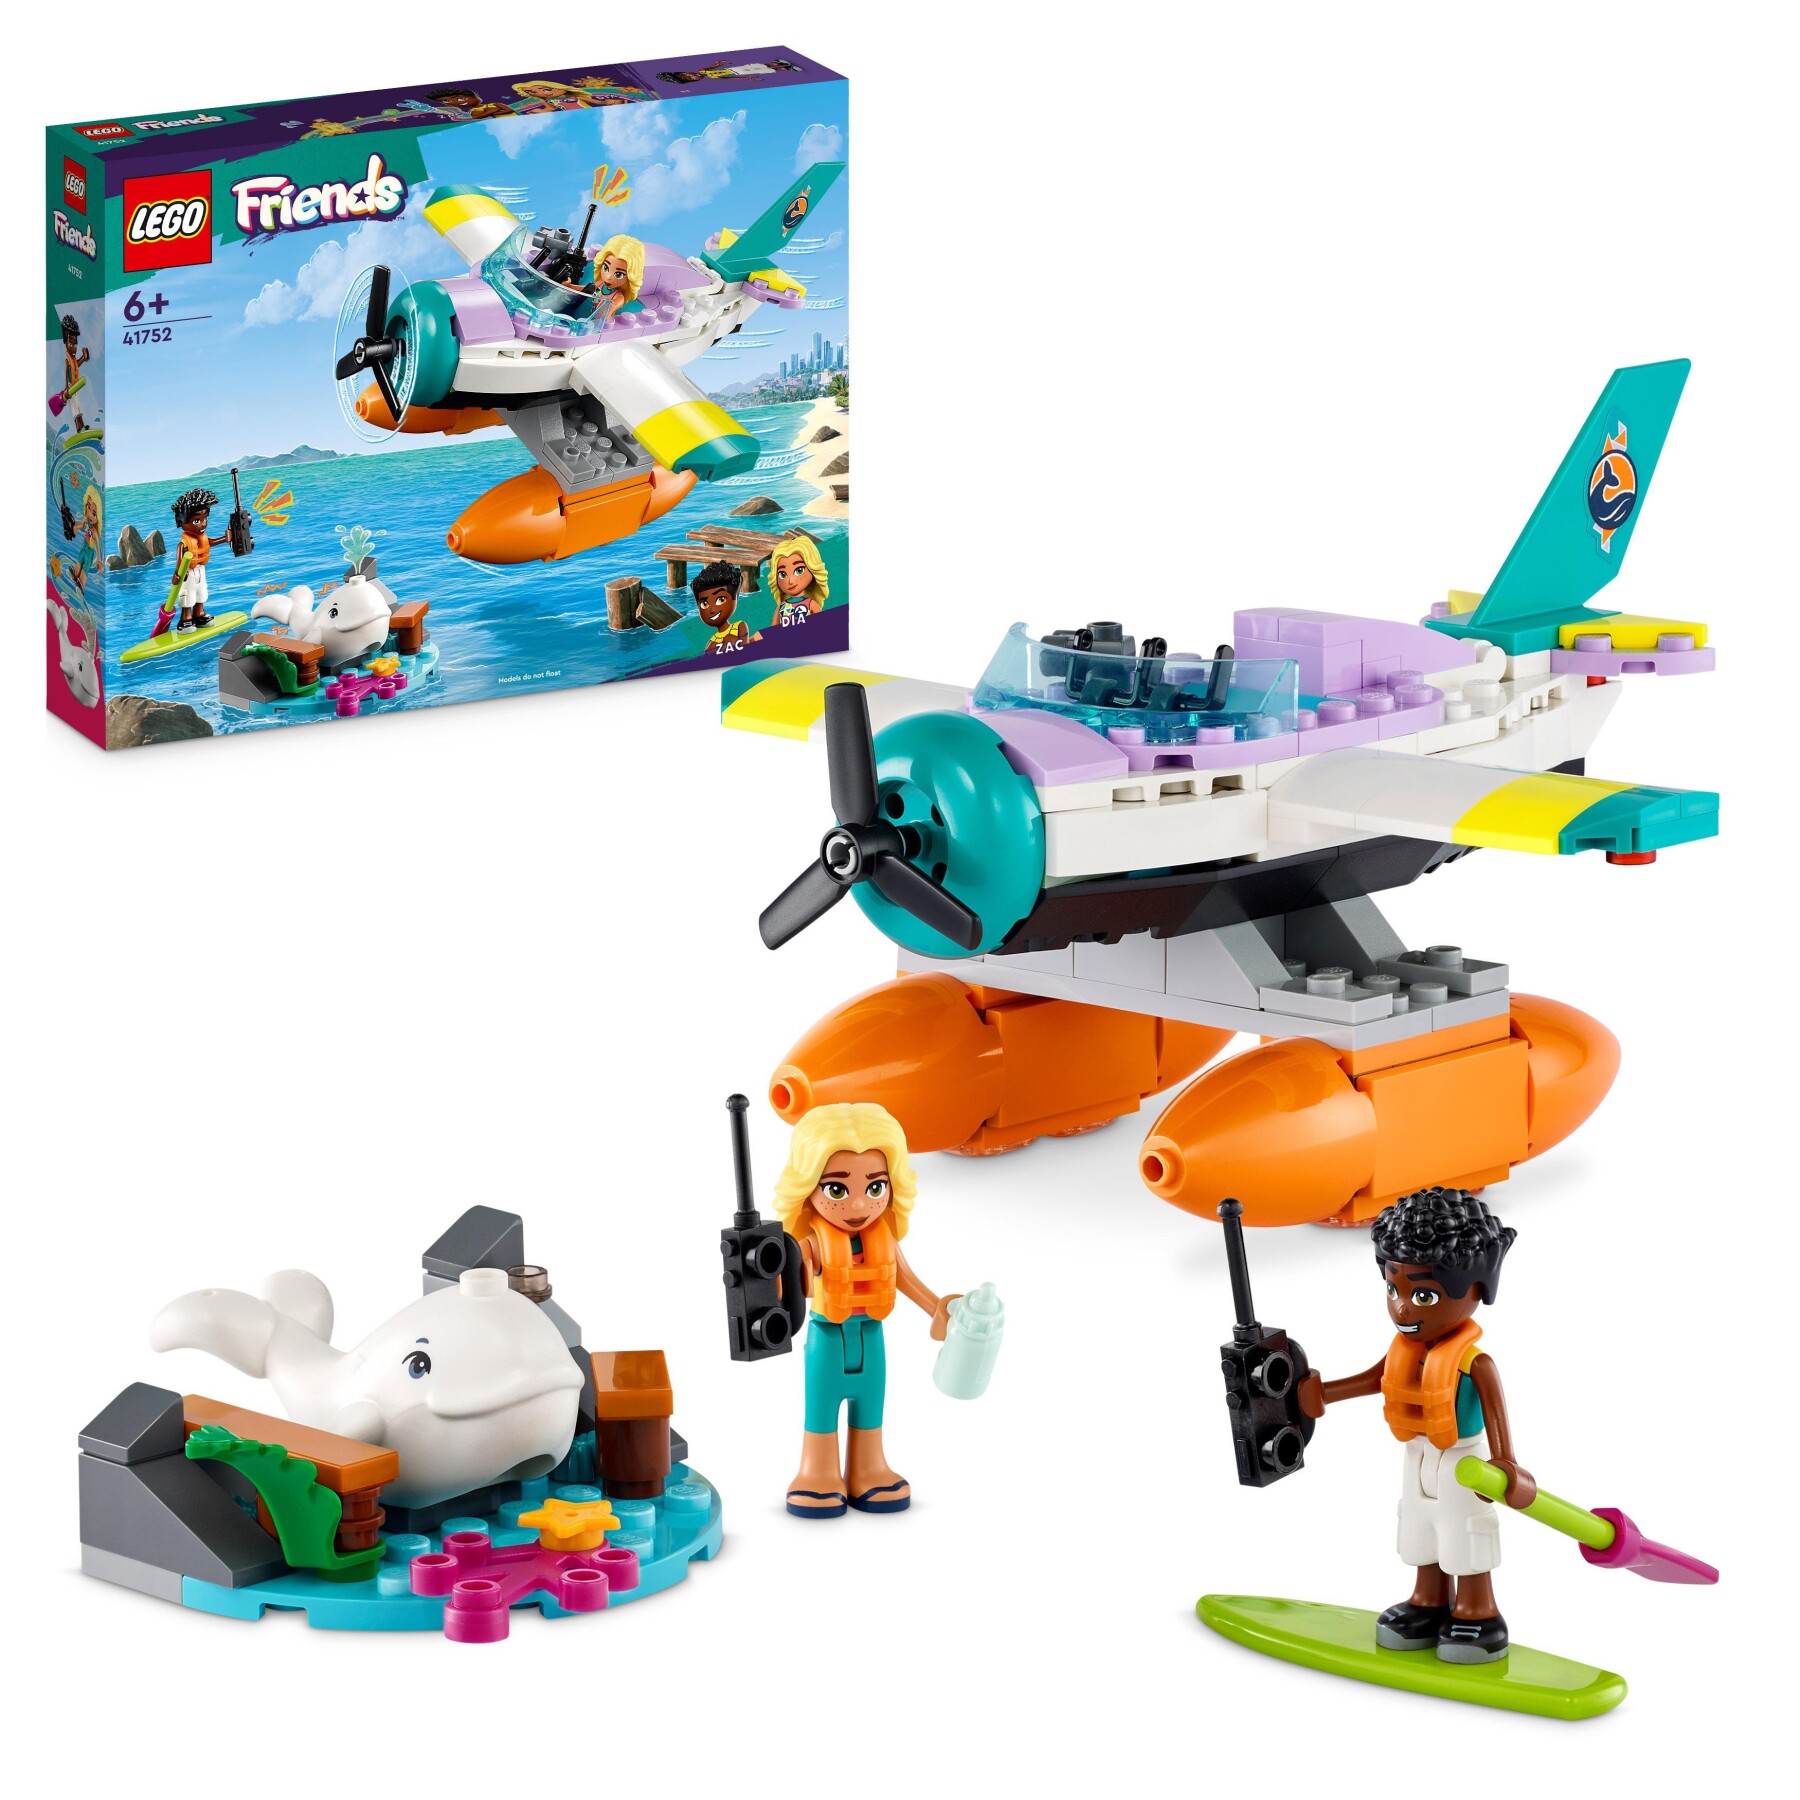 Lego friends 41752 idrovolante di salvataggio, aereo giocattolo soccorso  animali con balena e mini bamboline per bambini 6+ - Toys Center